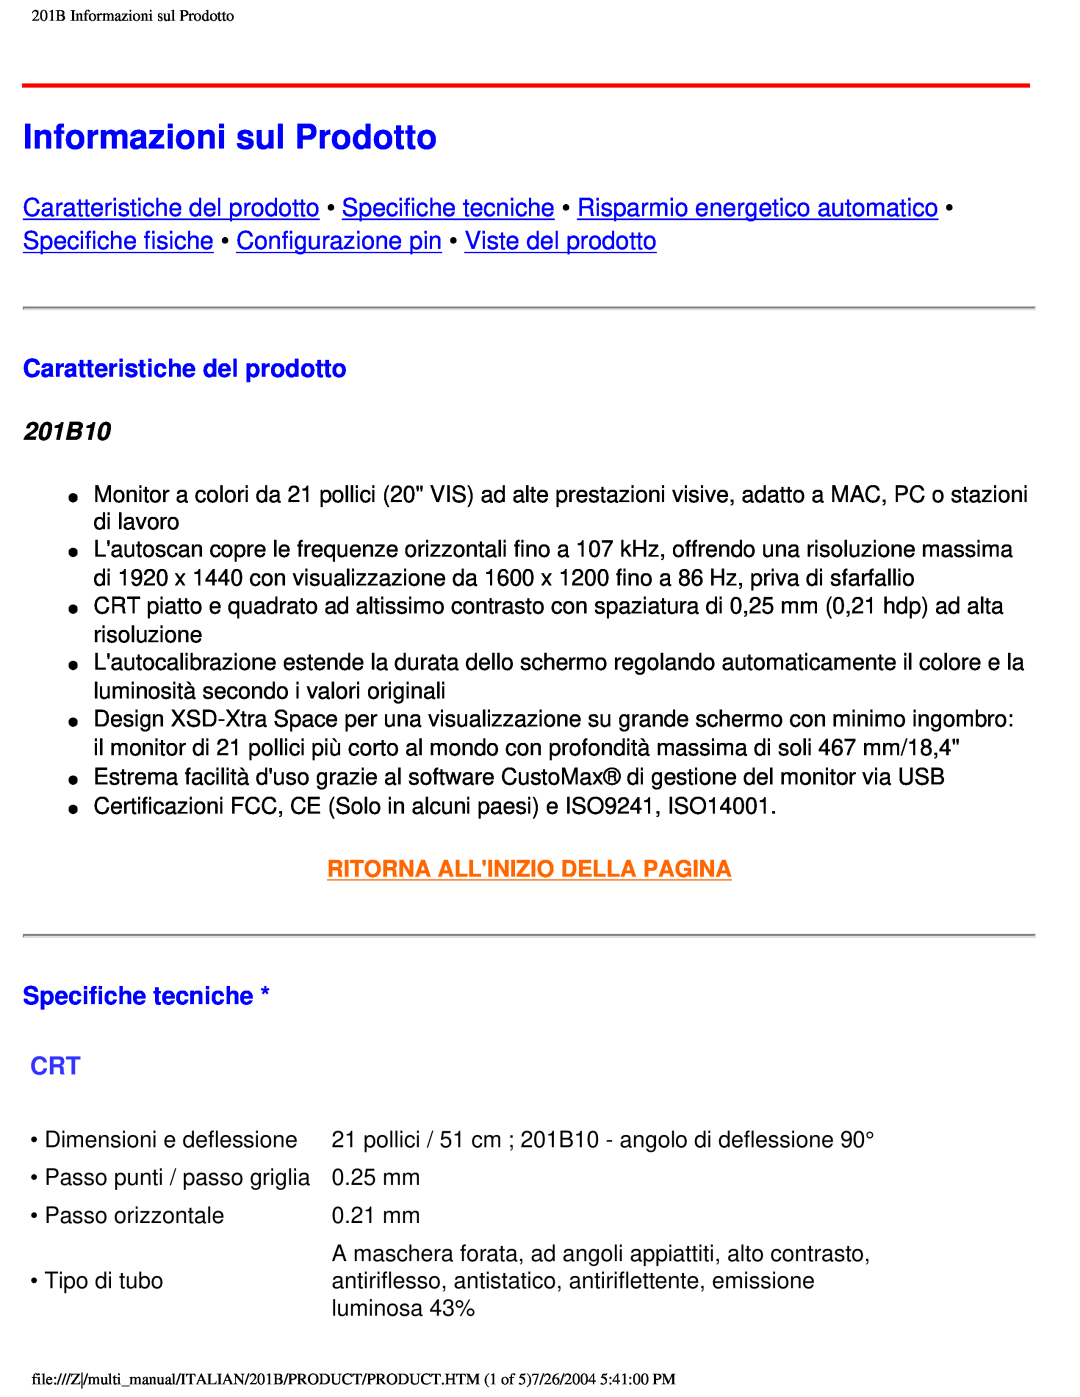 Philips user manual Informazioni sul Prodotto, Caratteristiche del prodotto, 201B10, Specifiche tecniche 